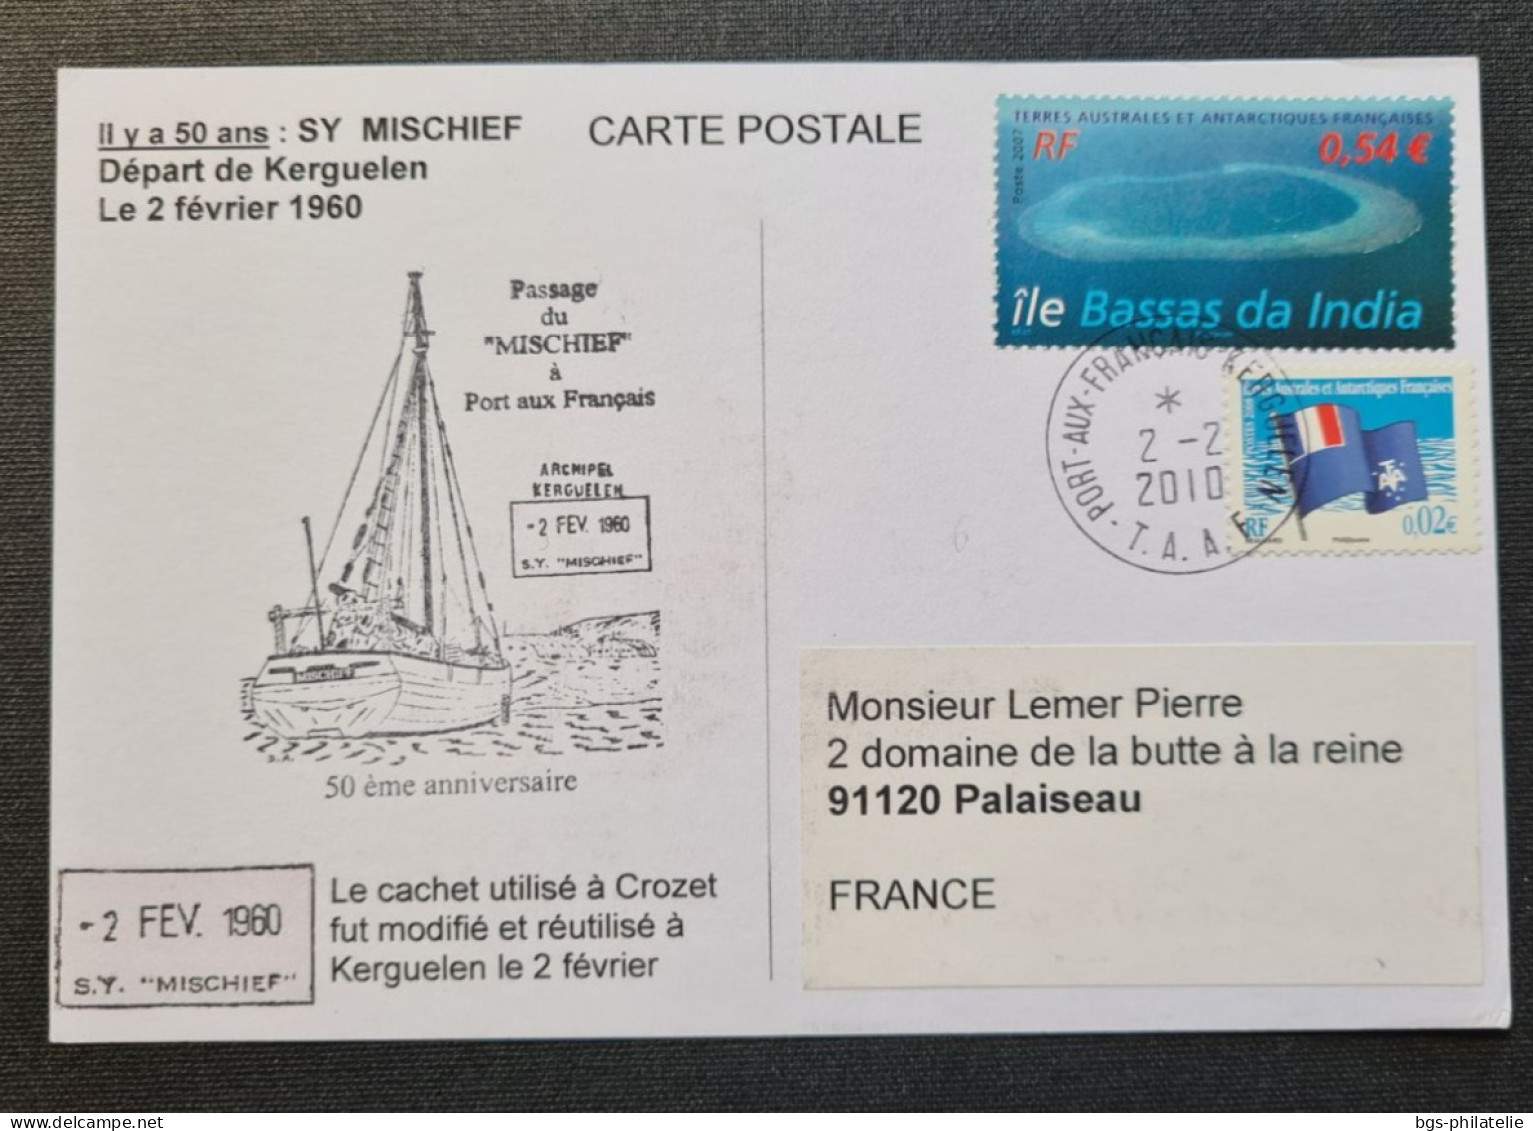 TAAF, Entier Postal Oblitéré De Kerguelen Le 2/2/2010. - Covers & Documents